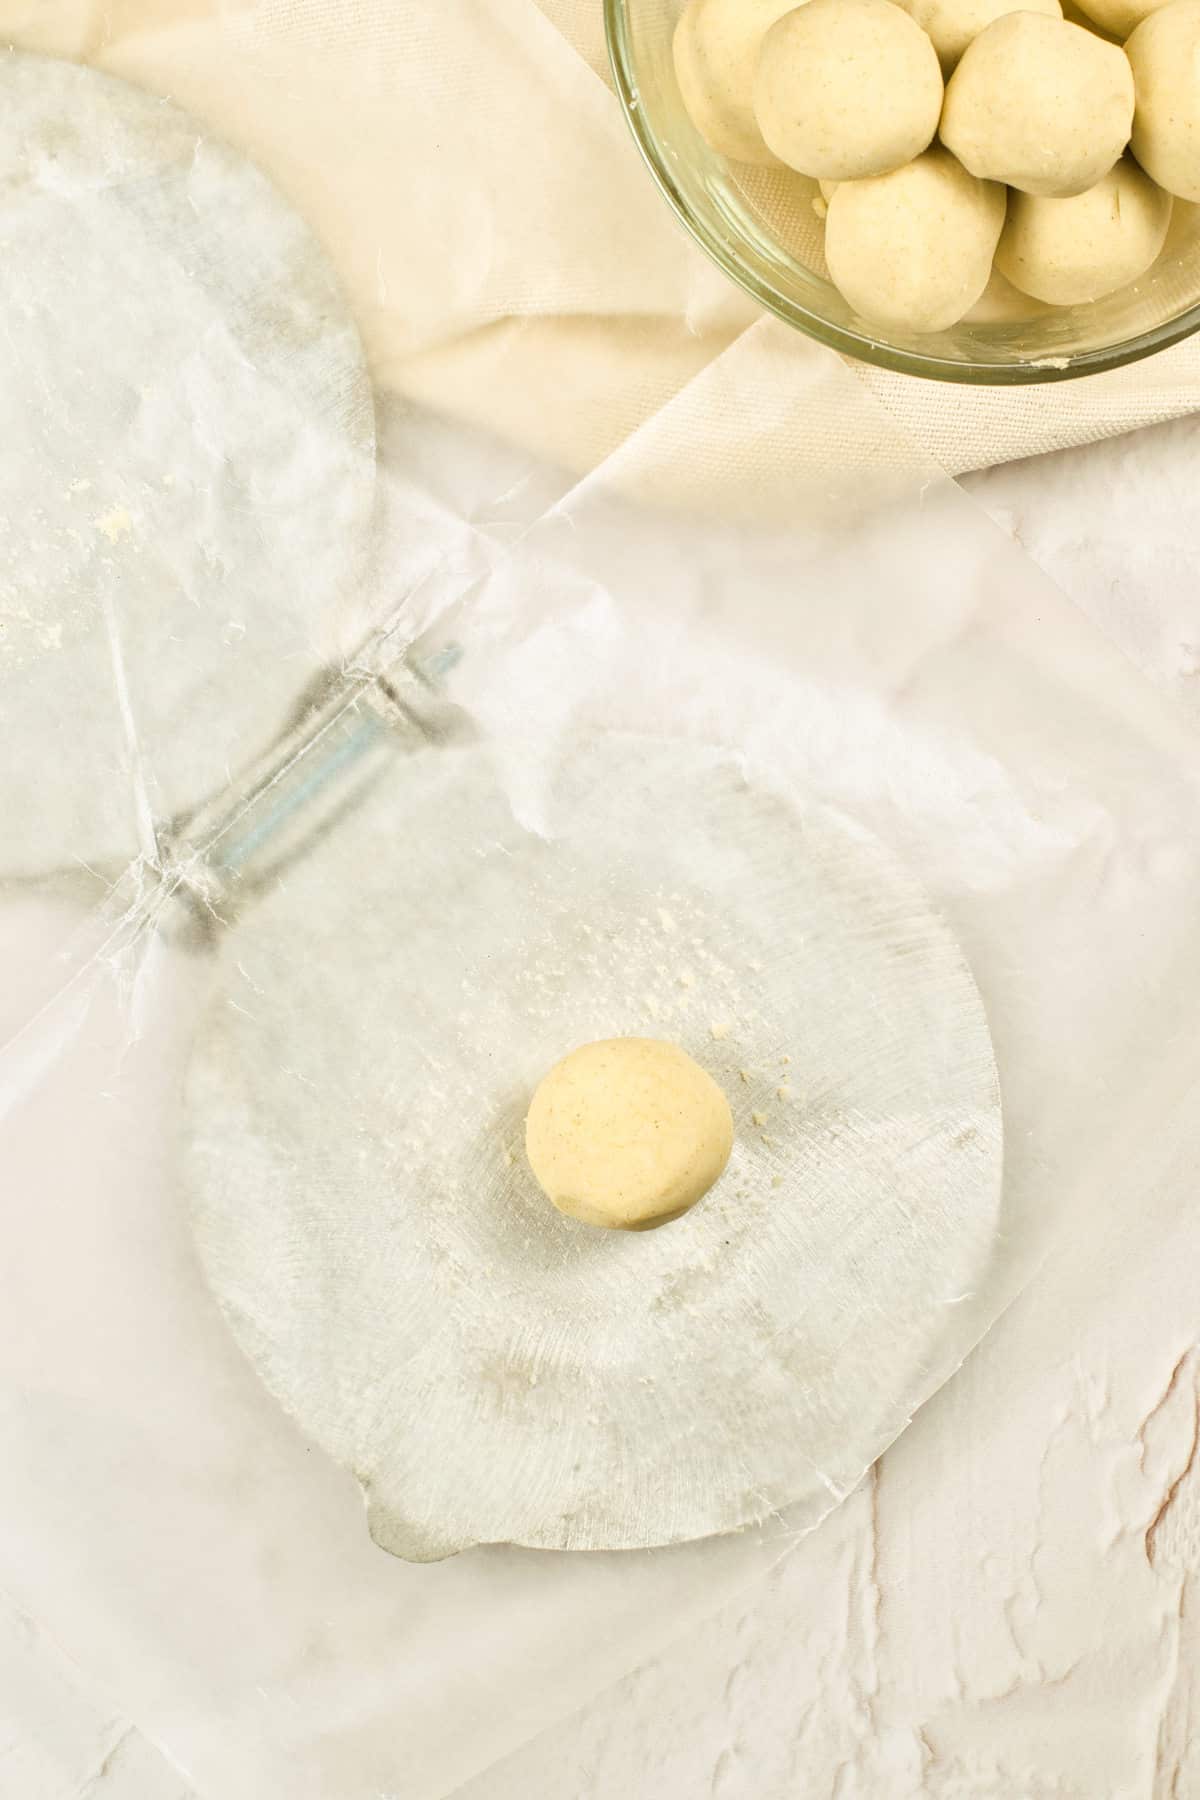 A dough ball on a wax paper lined tortilla press.